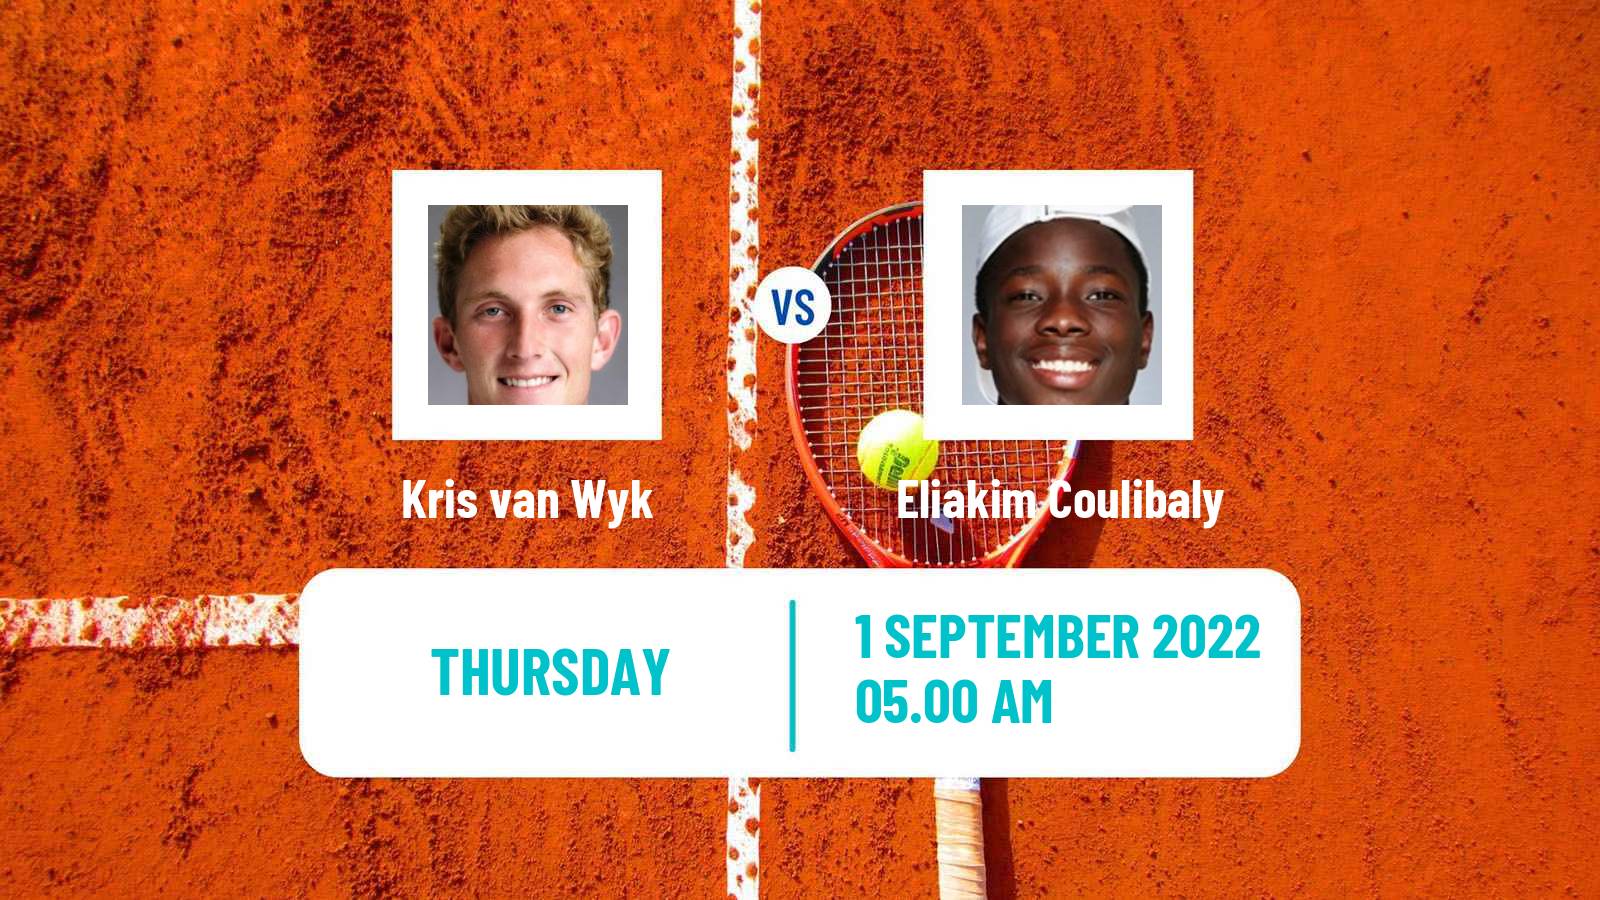 Tennis ITF Tournaments Kris van Wyk - Eliakim Coulibaly